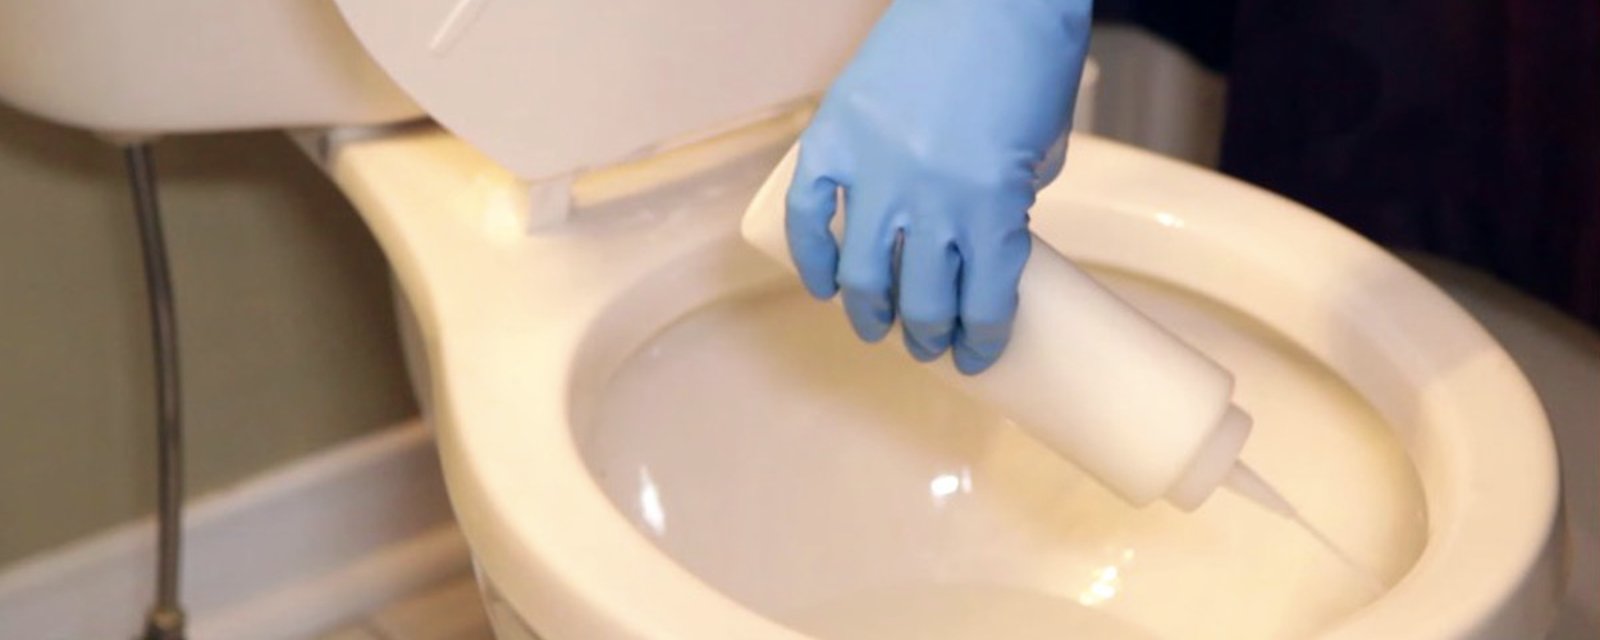 Faites votre propre nettoyant maison pour les toilettes en suivant cette recette